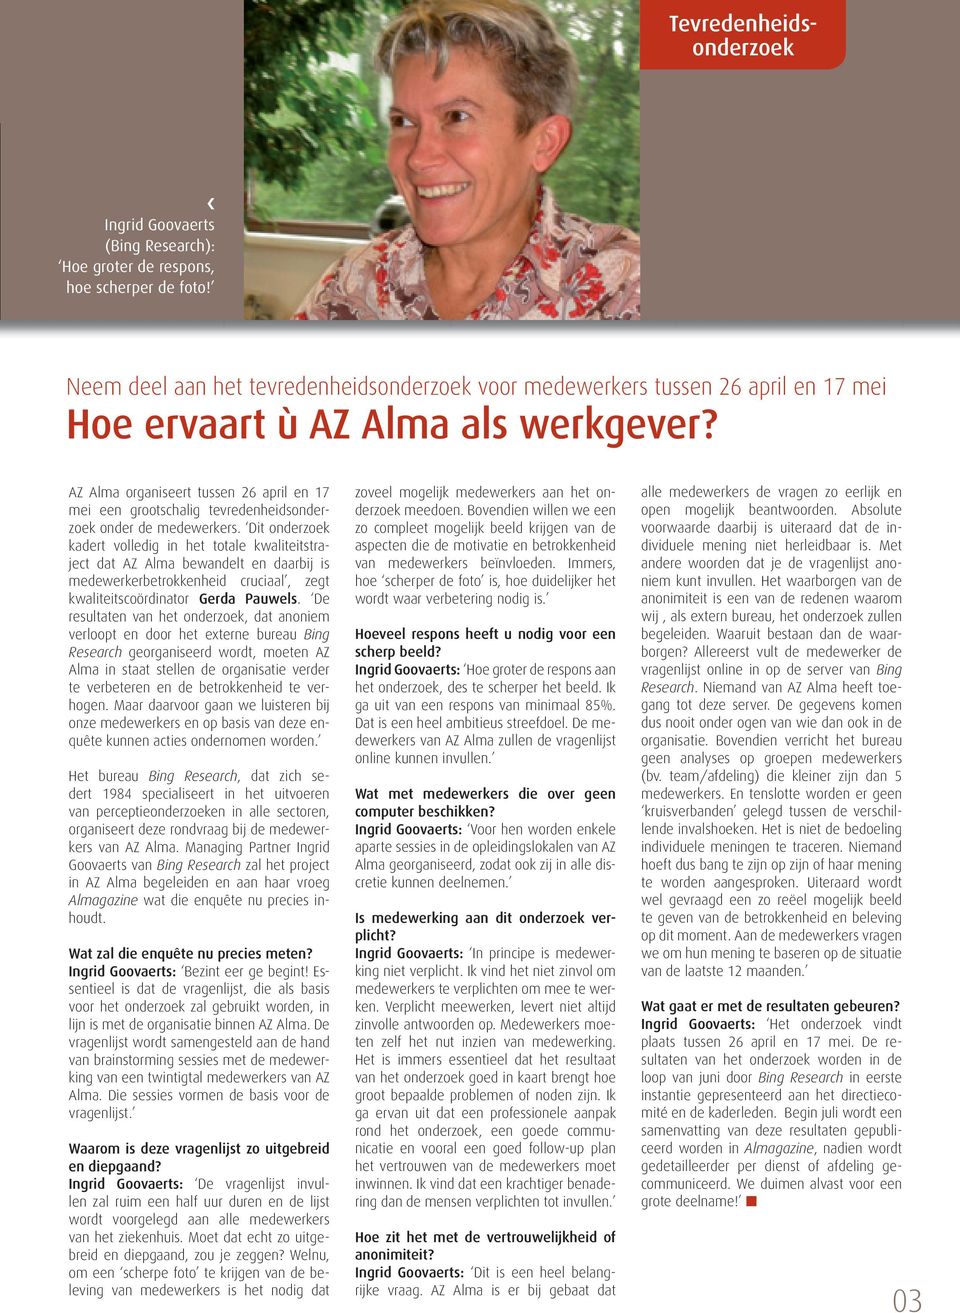 AZ Alma organiseert tussen 26 april en 17 mei een grootschalig tevredenheidsonderzoek onder de medewerkers.